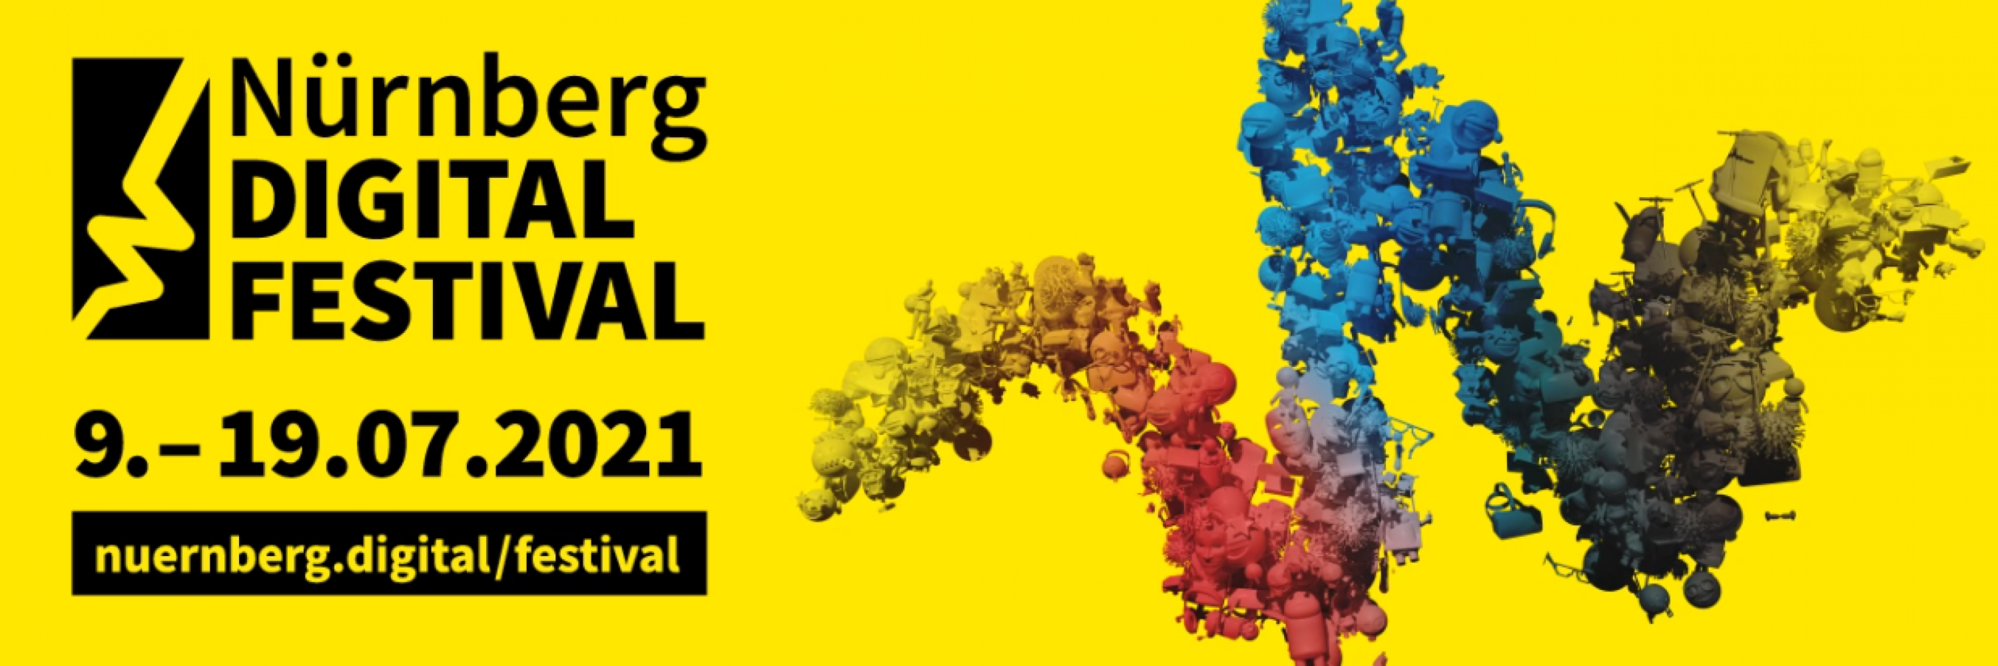 Nürnberg Digital Festival: vom 09.–19.07.2021 Digitalisierung für alle!